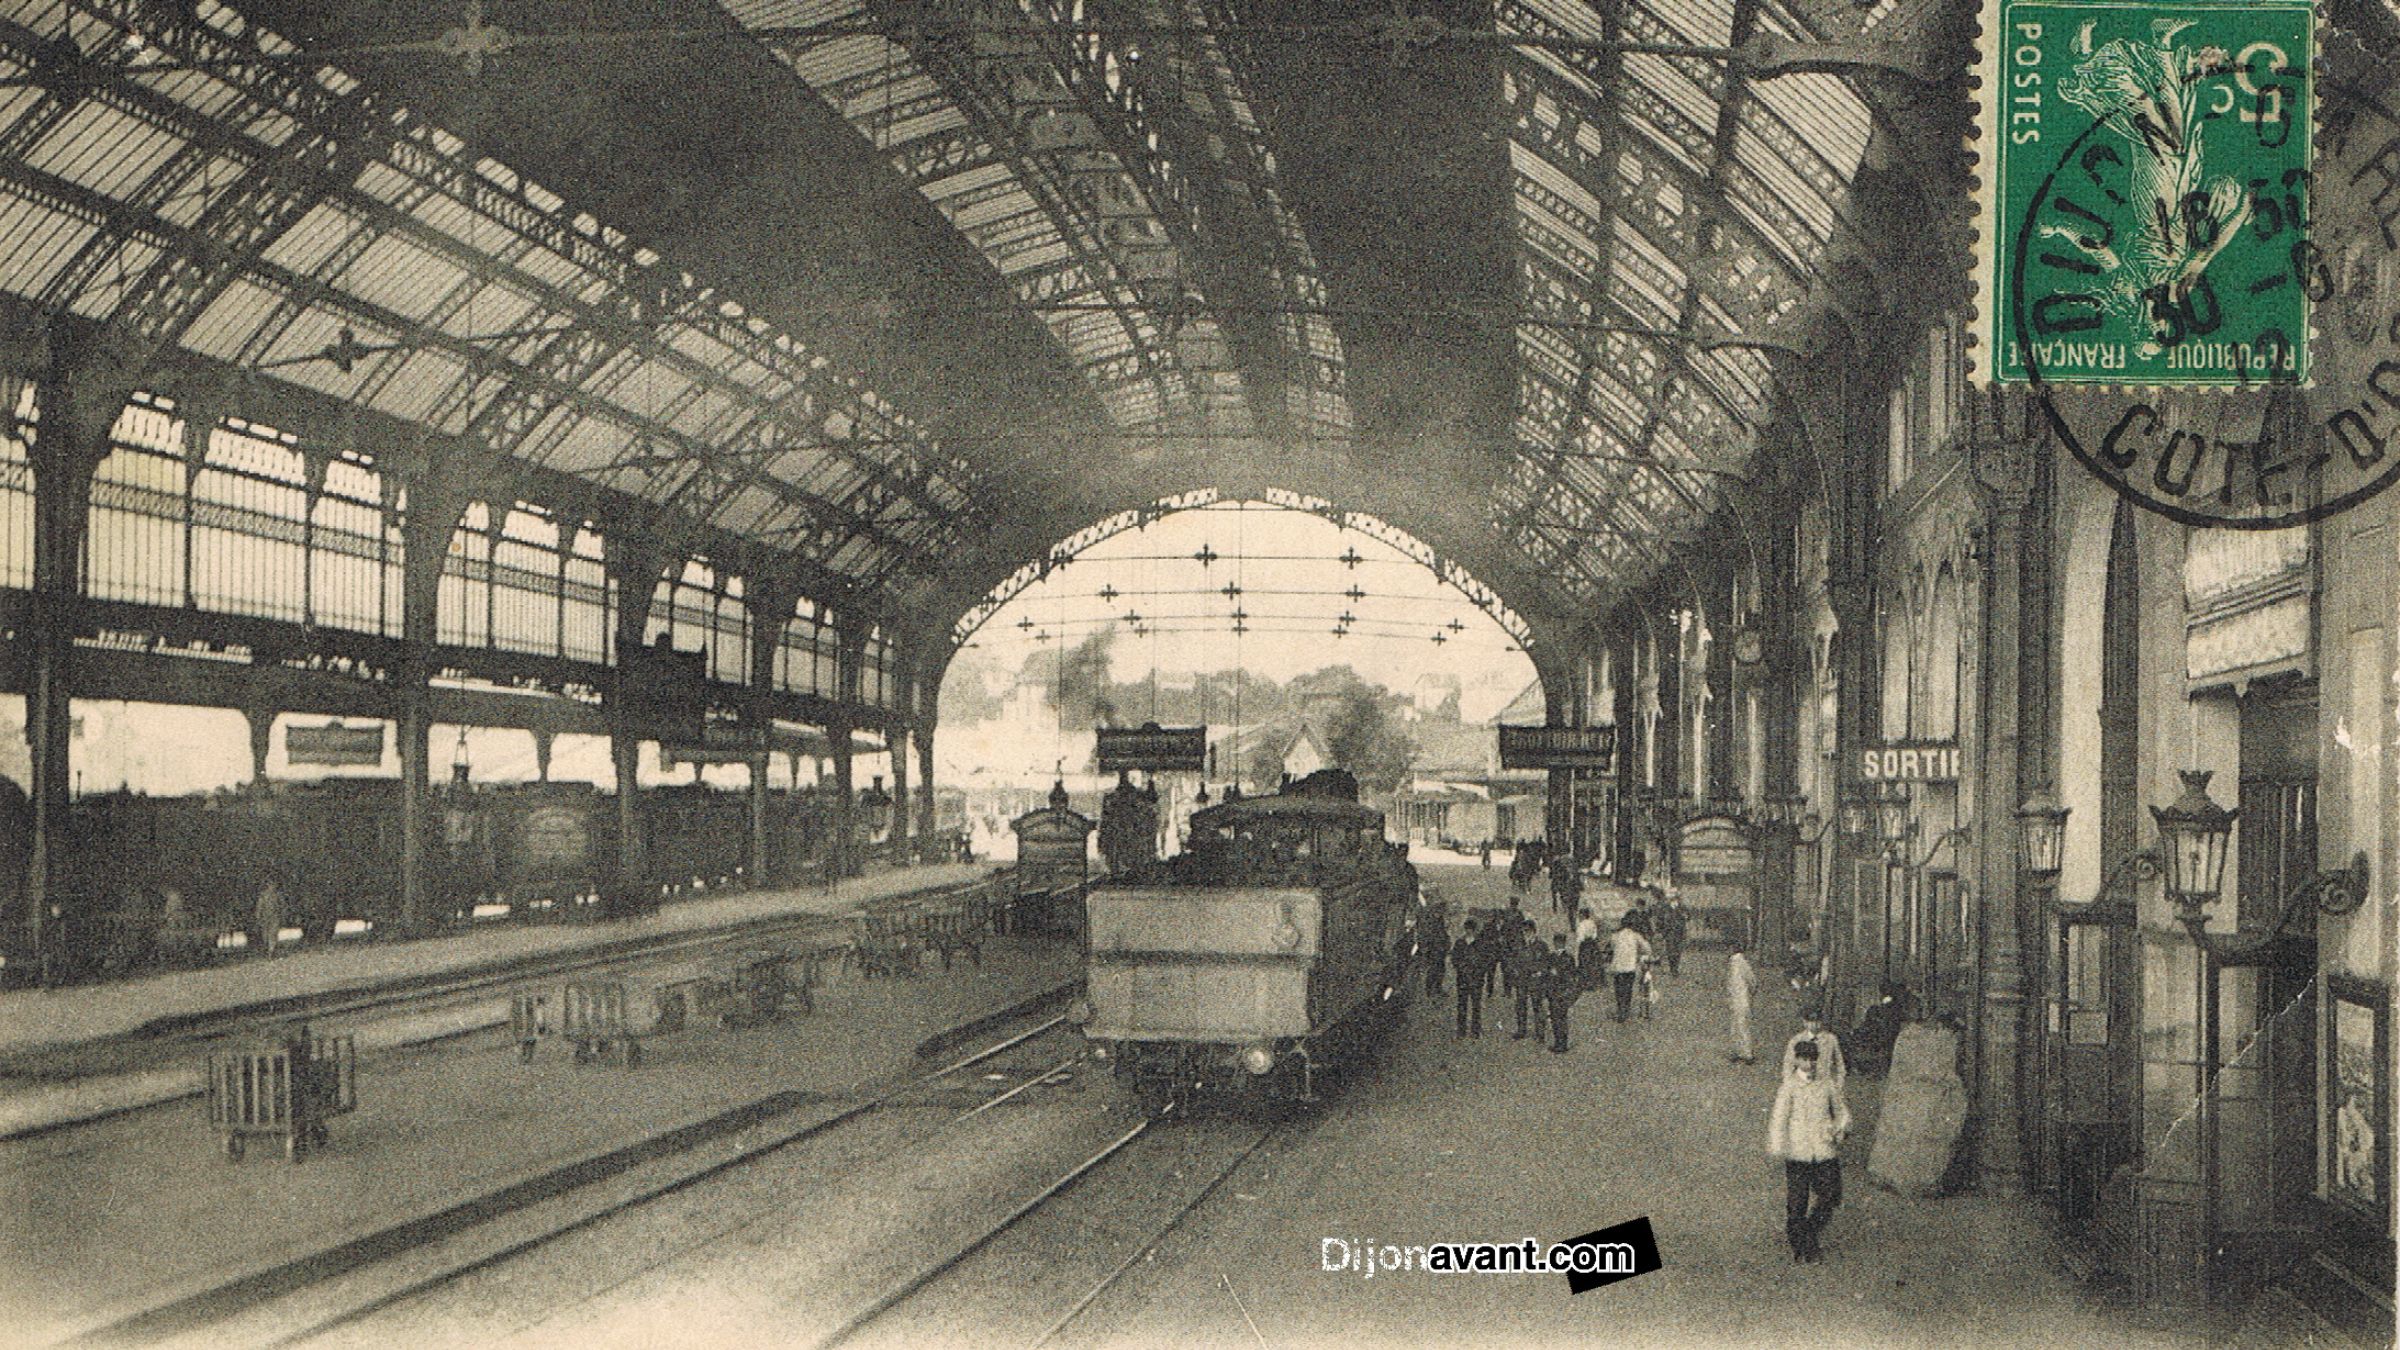 Dijon à travers le temps – La gare Dijon-Ville